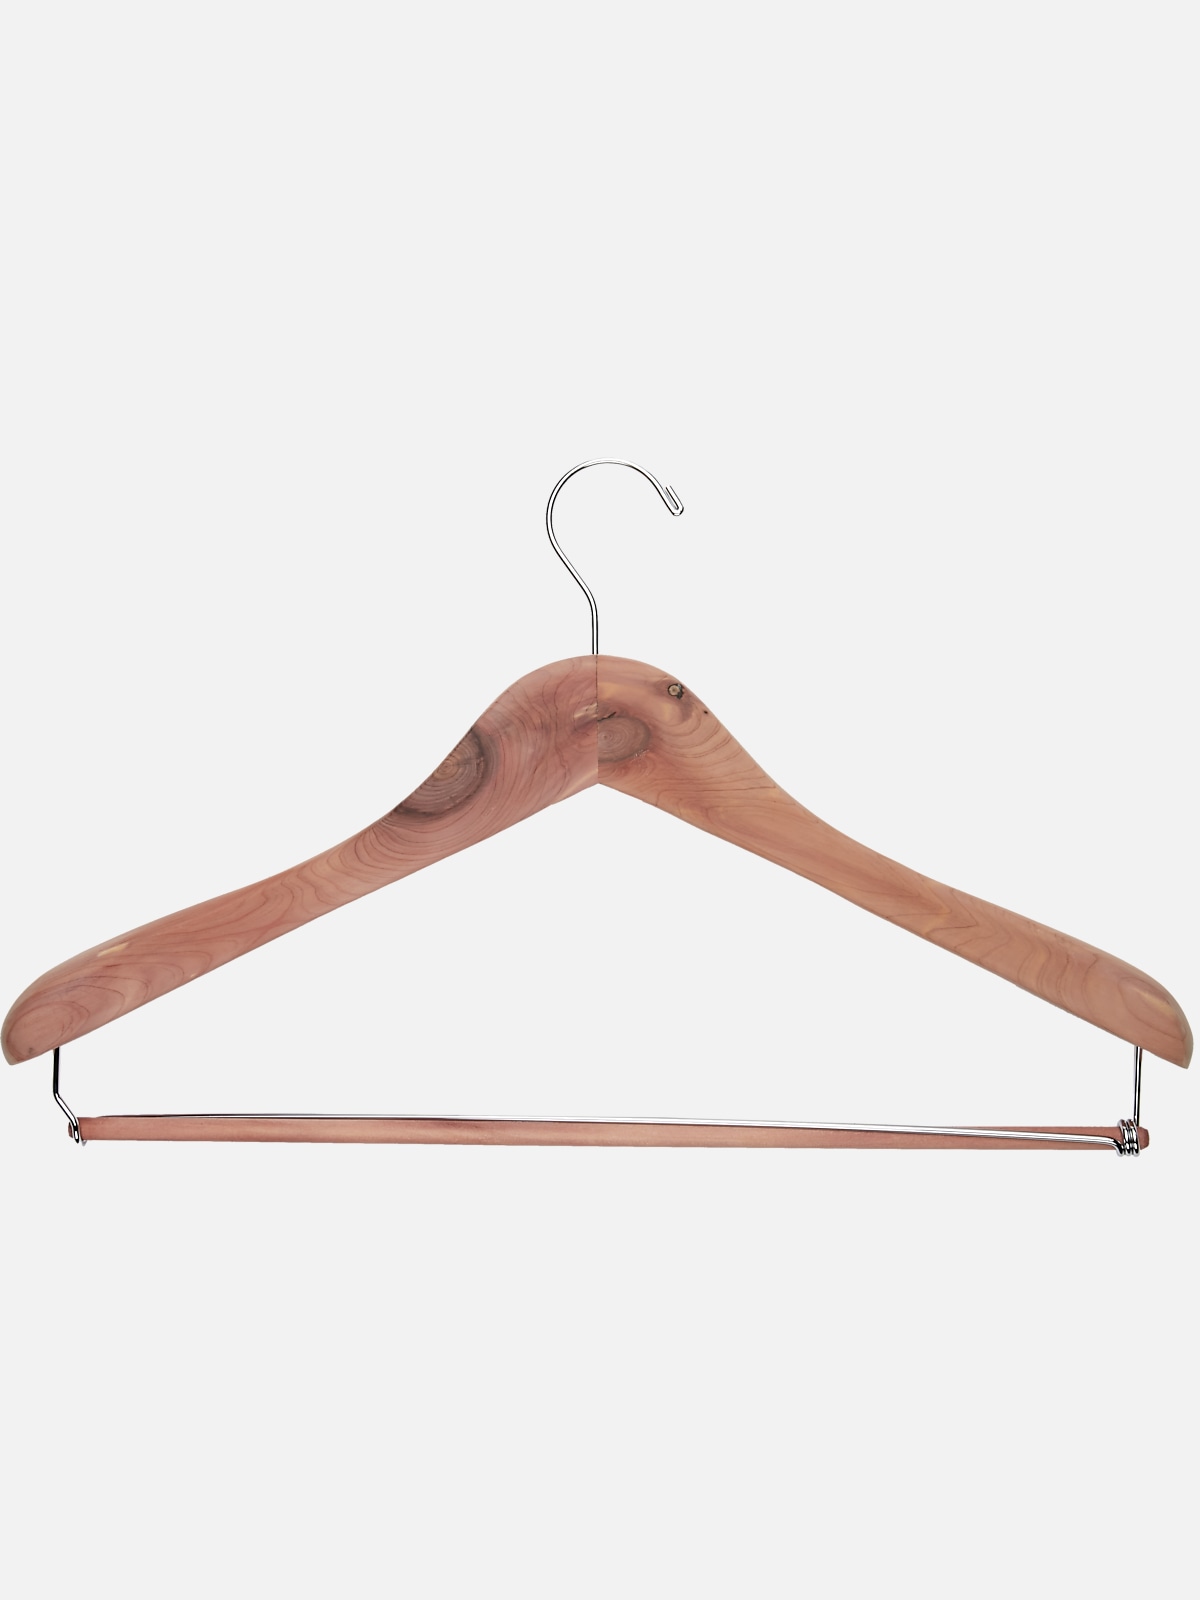 Men's Suit Hanger 